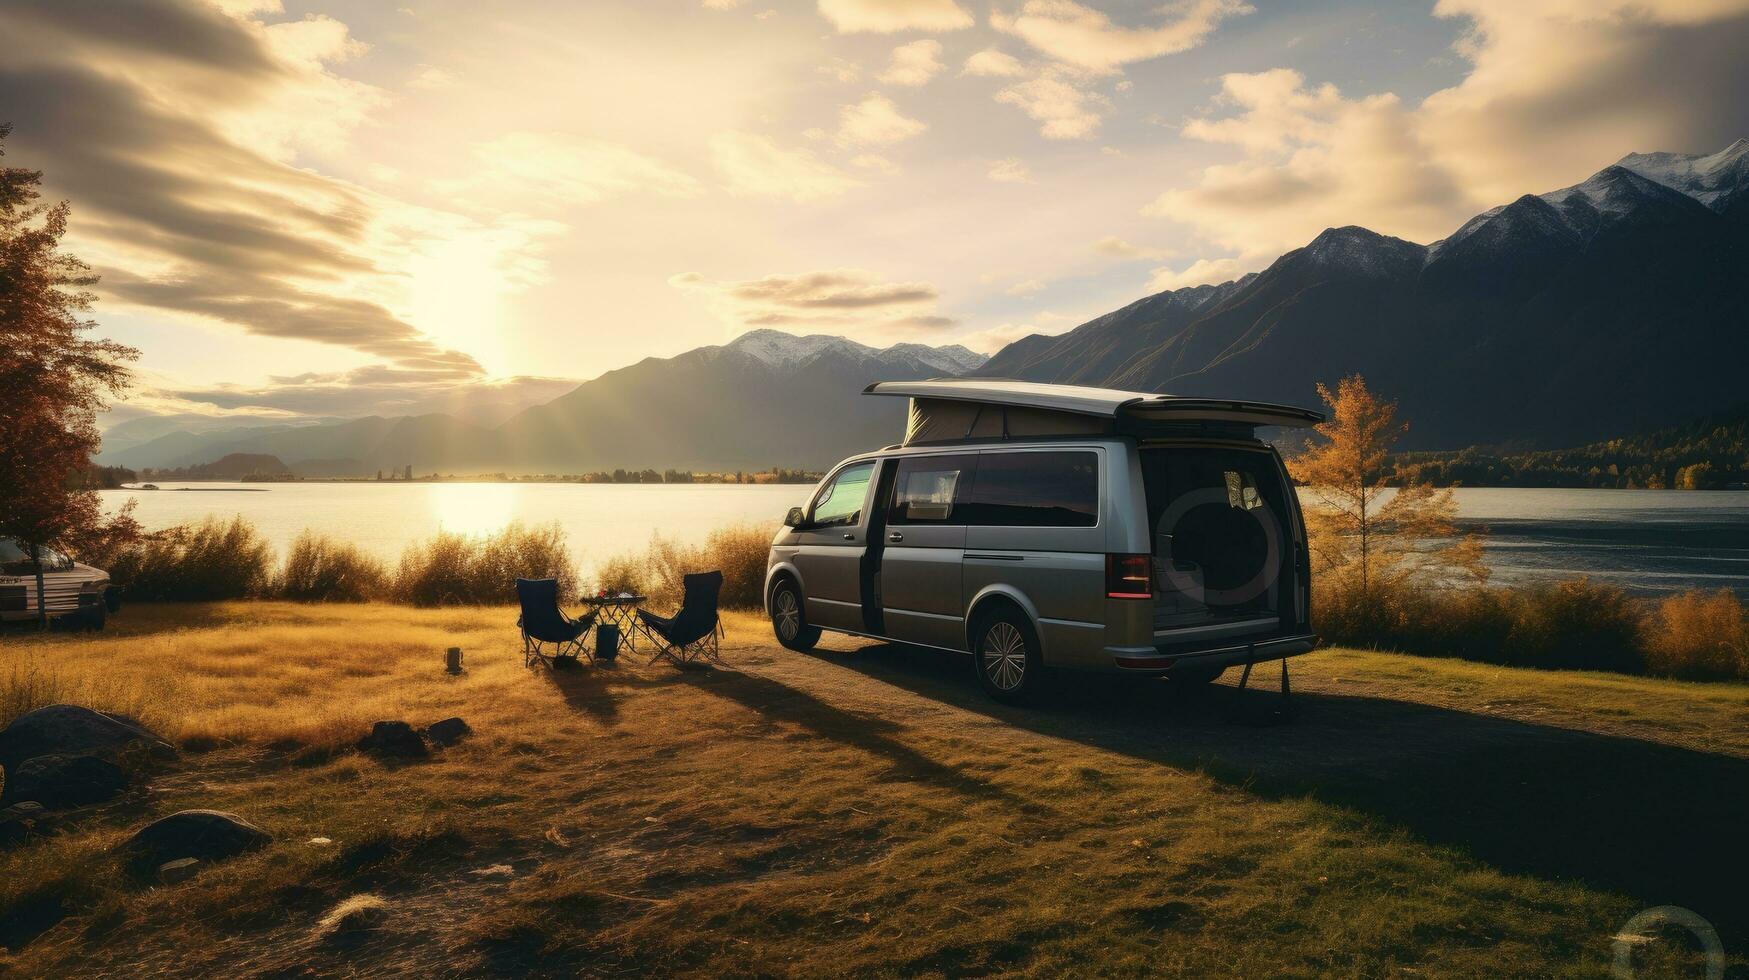 familie camping auto Gaan Aan vakantie in een camper busje, geparkeerd De volgende naar de rivier, met de bergen achter de zonsondergang. foto